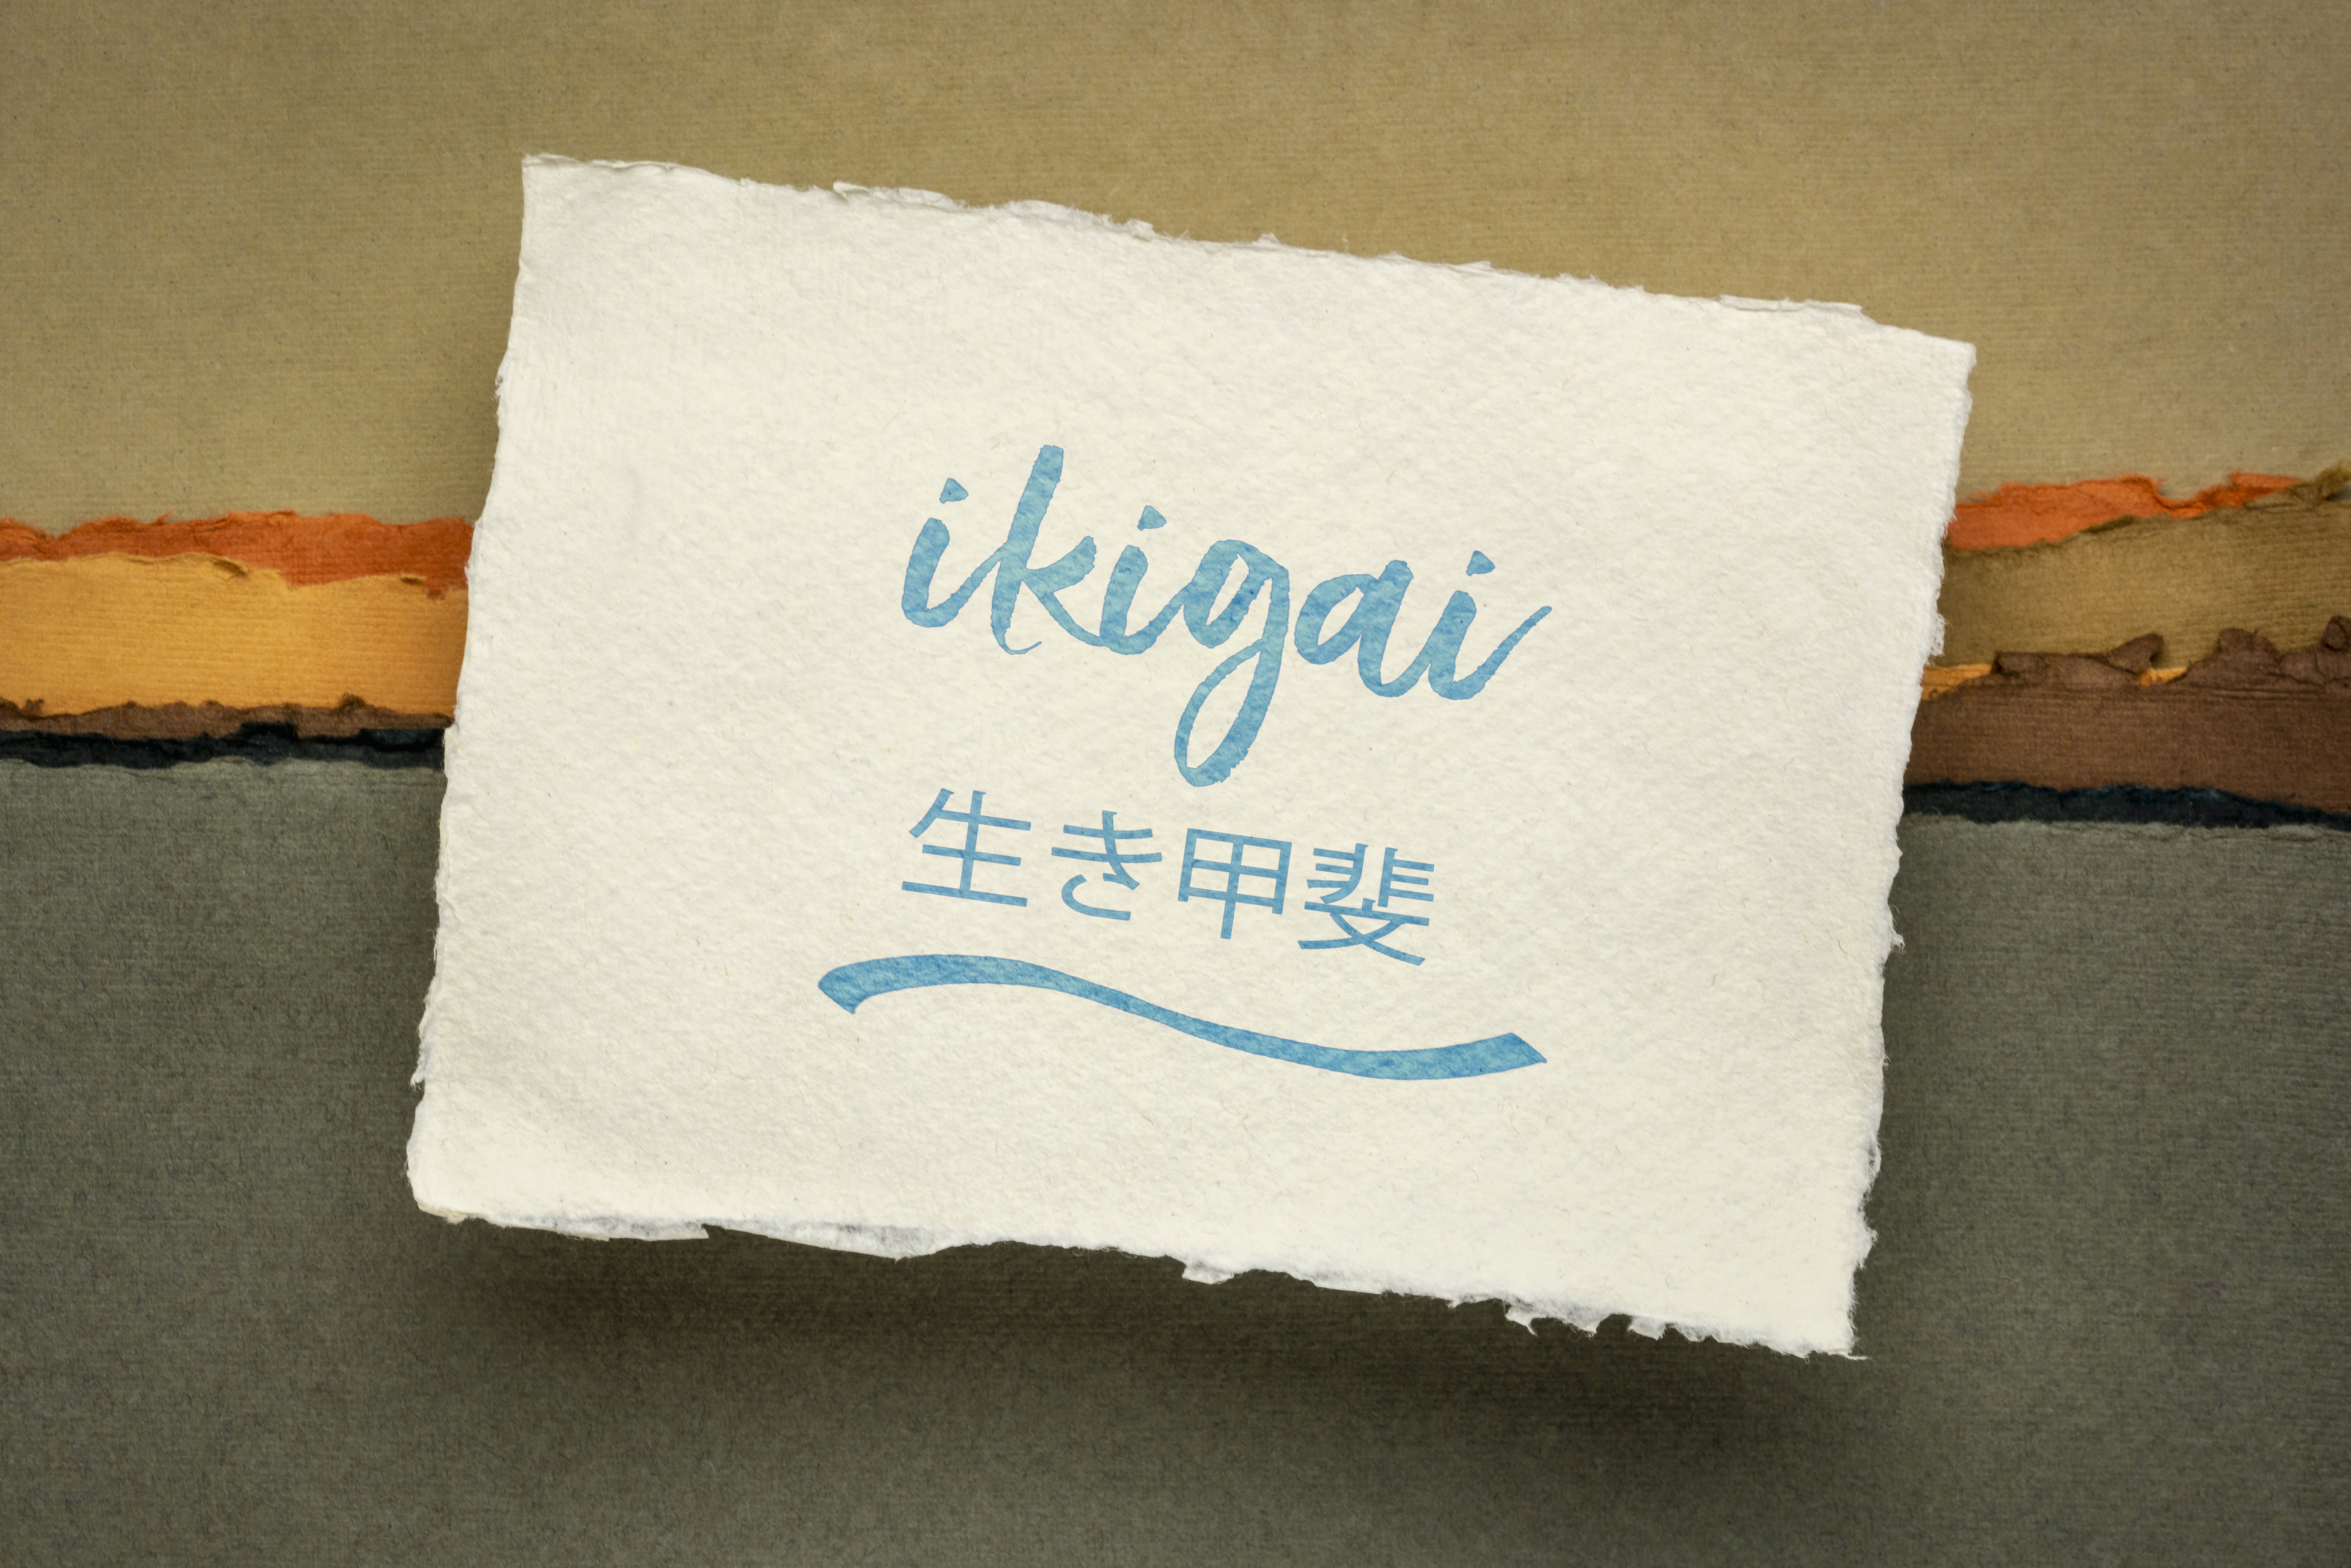 Resilienz Akademie | Ikigai - für eine starke Resilienz